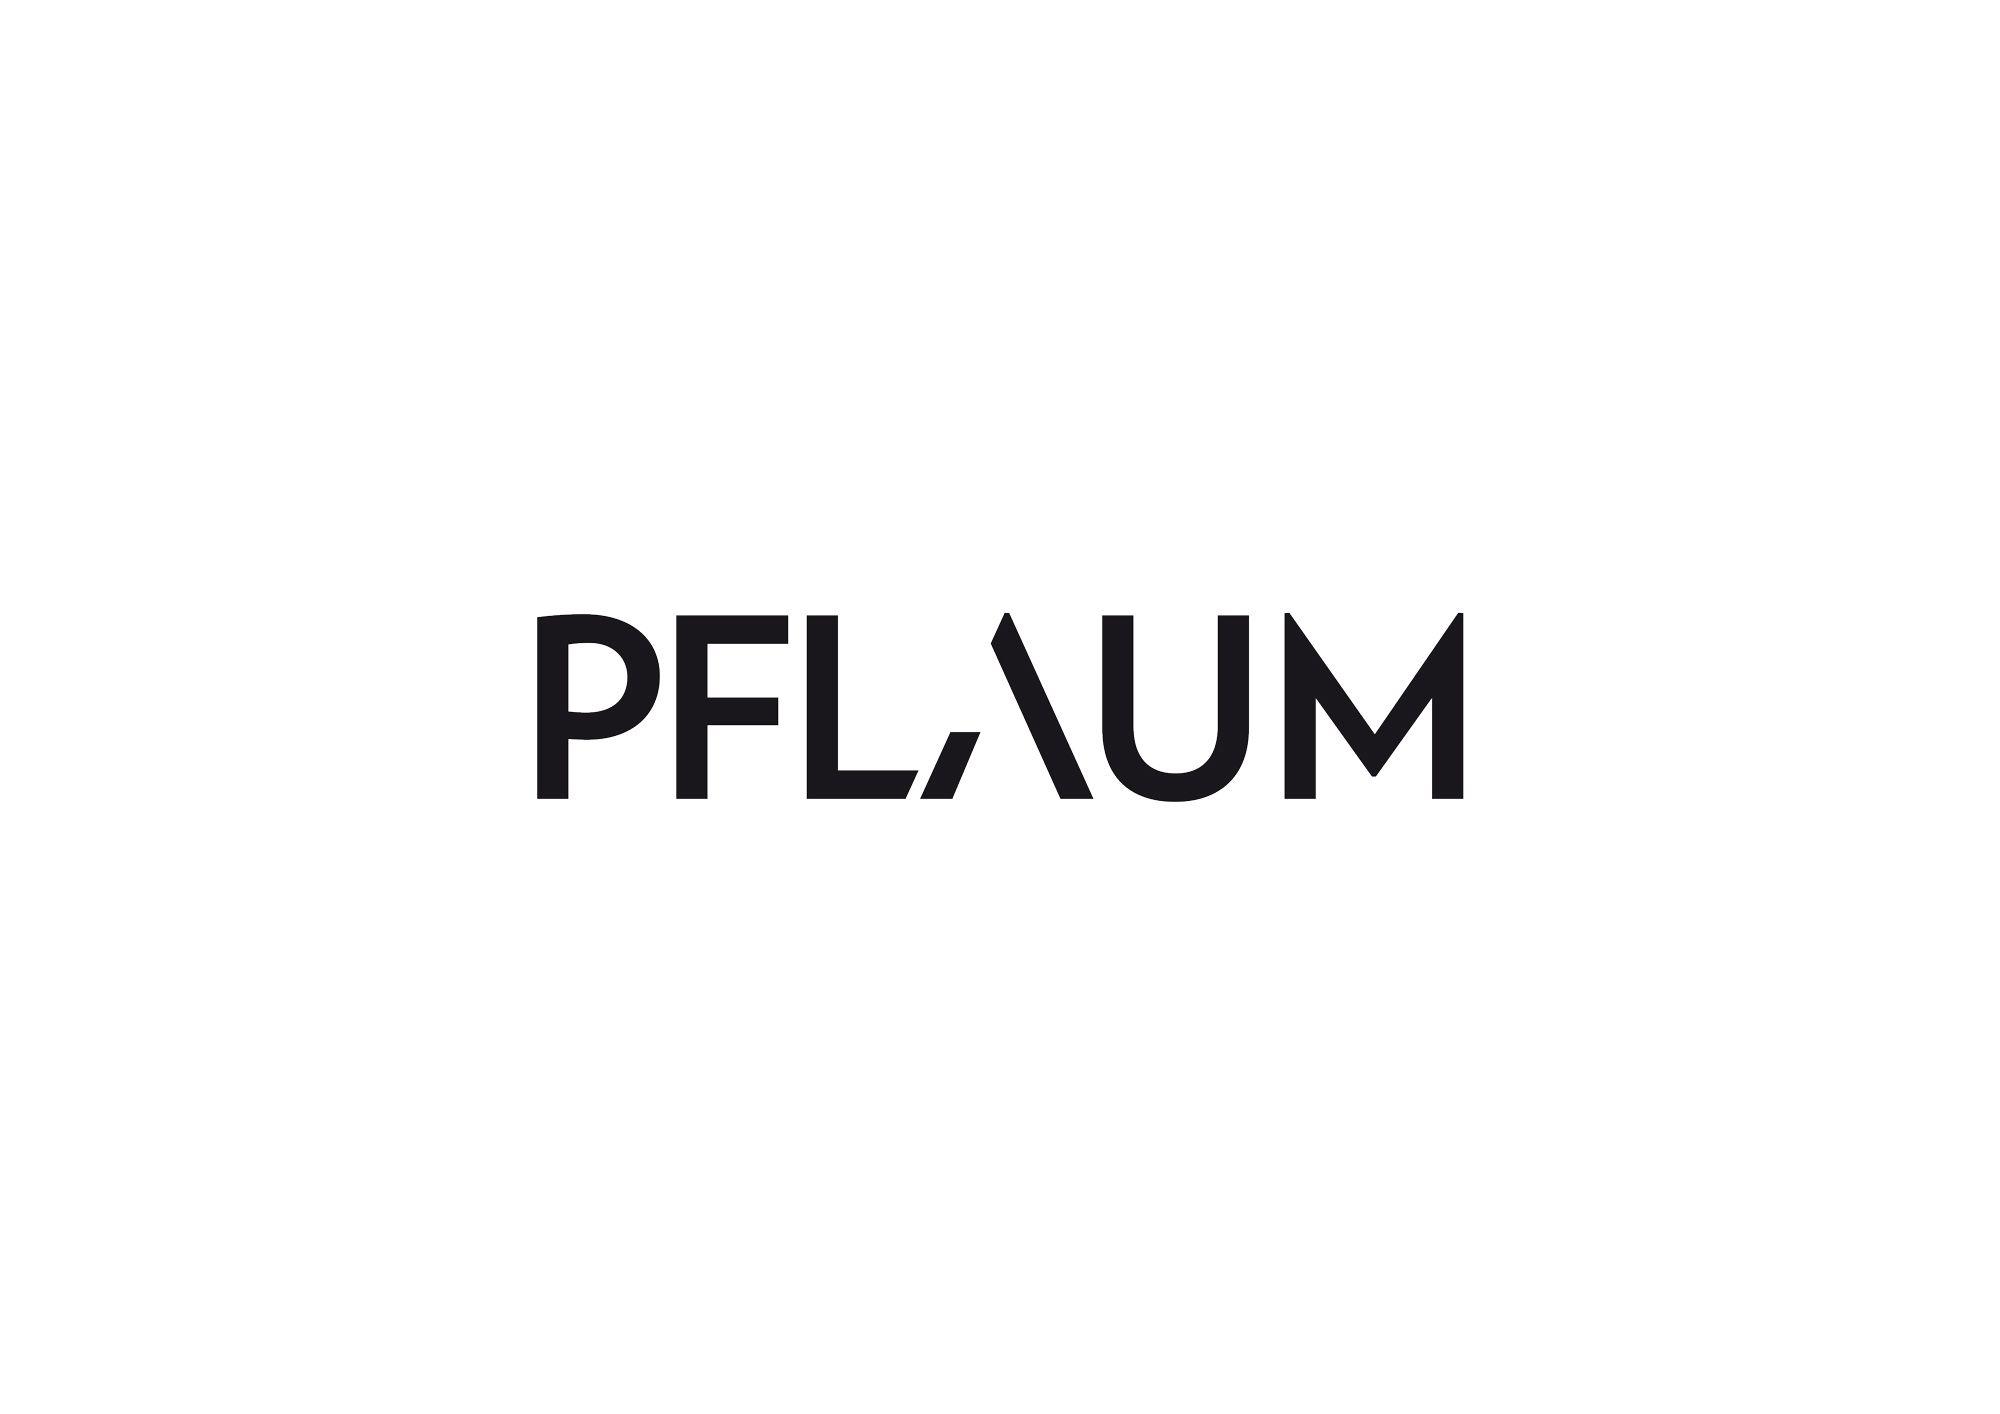 Pflaum Logo - Pflaum Verlag Wolter Design #logotype #icon